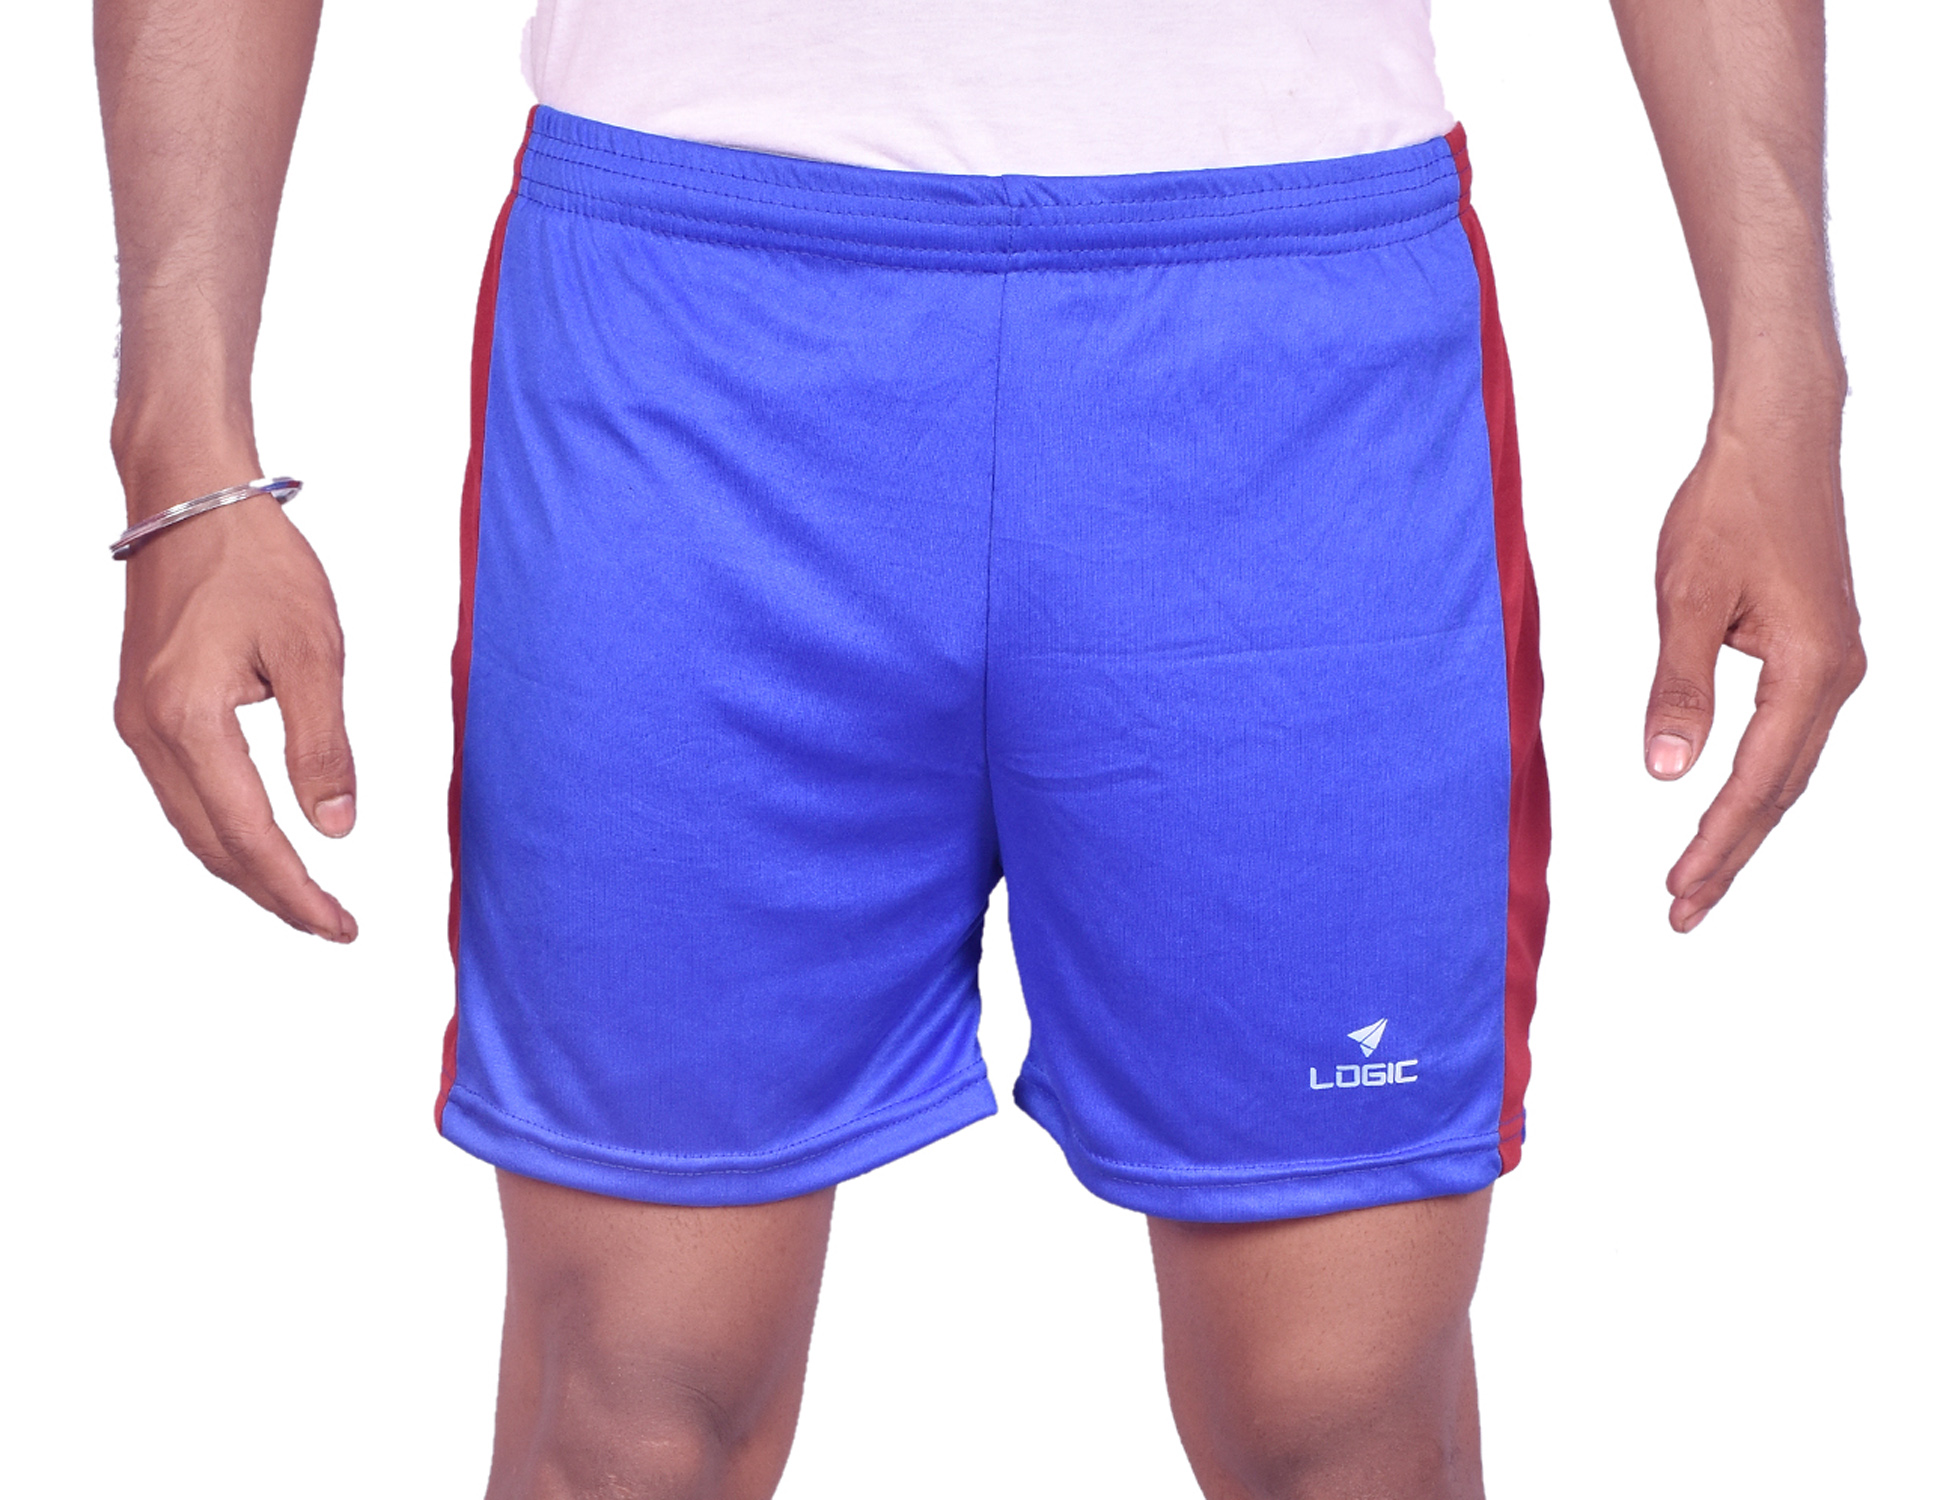 Download Soft Lycra Athletic Side Cut Half Pant Shorts for Men's ...